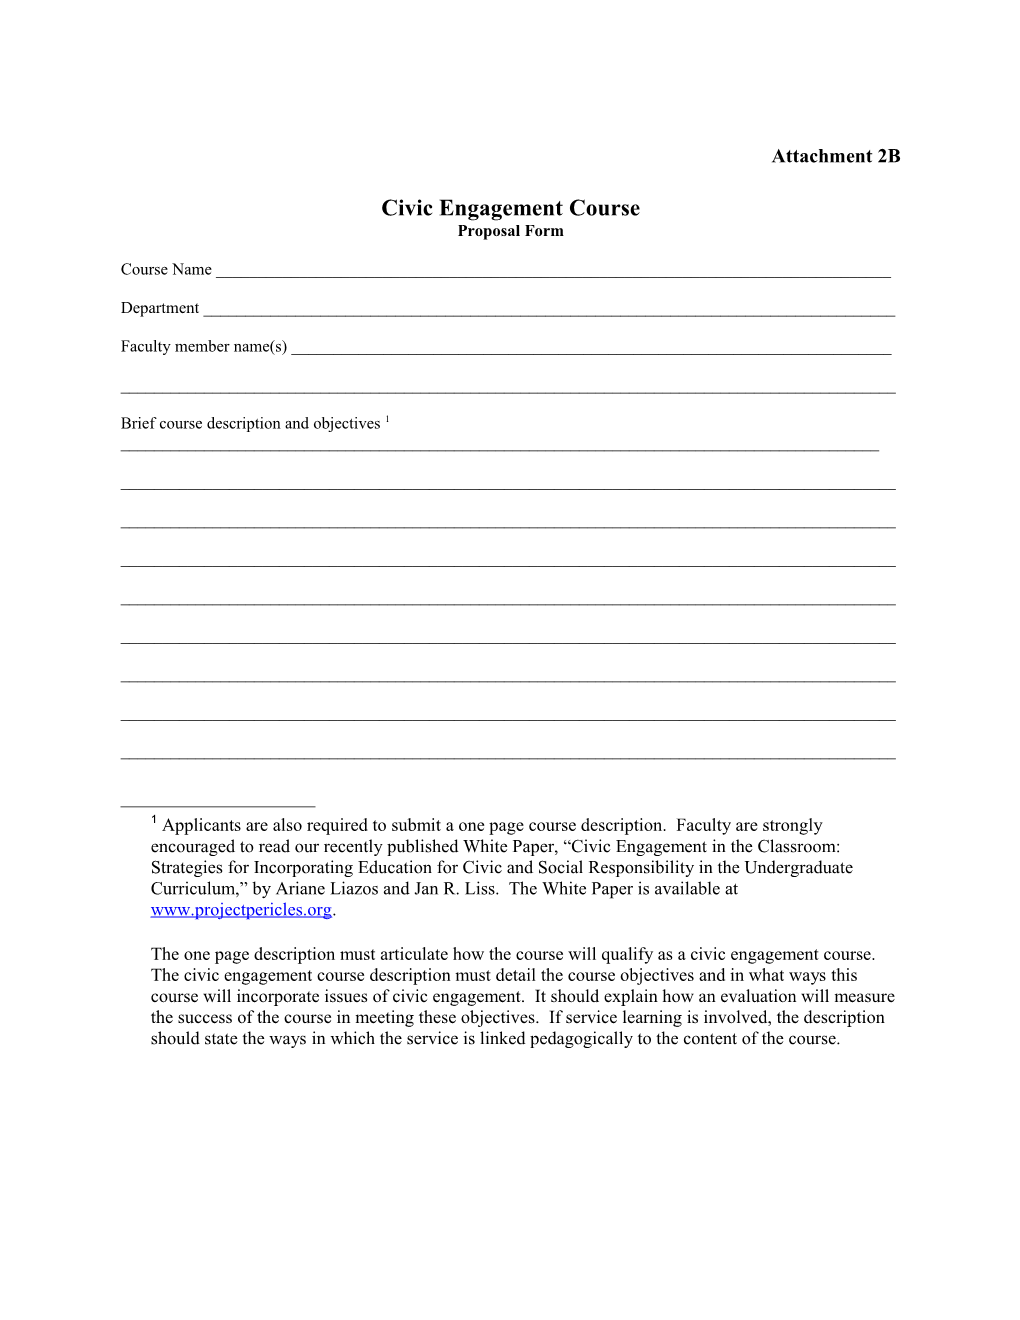 Civic Engagement Course